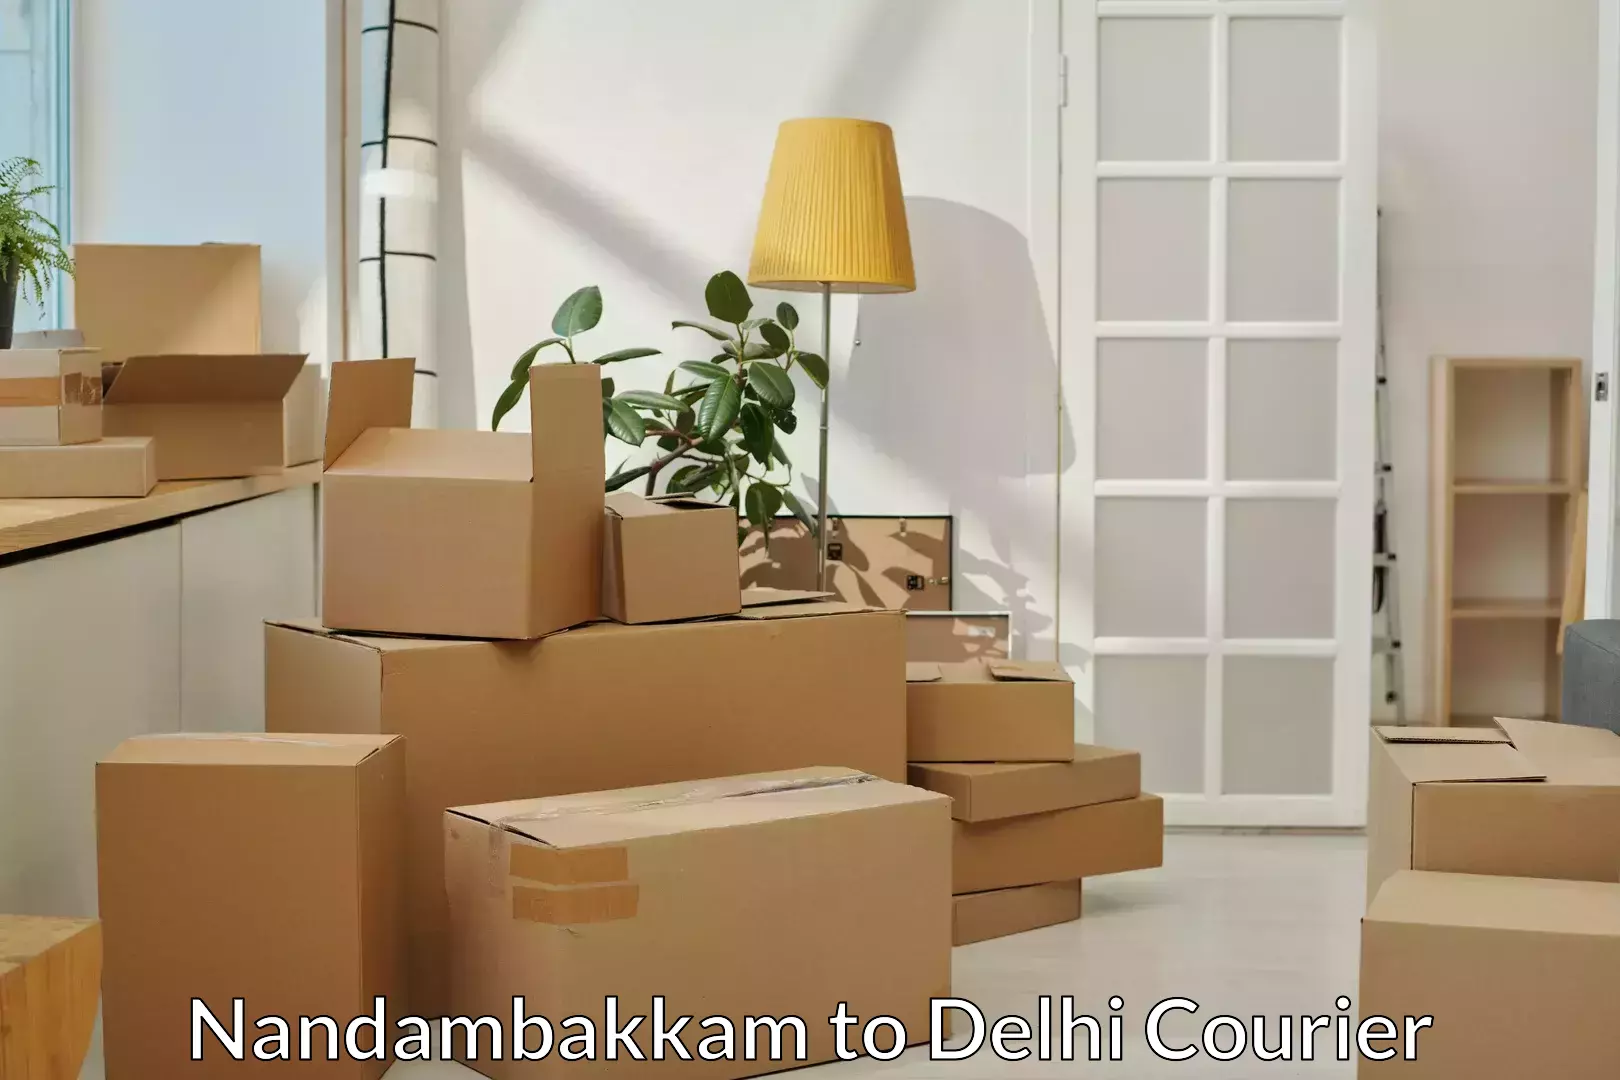 Furniture transport professionals Nandambakkam to Delhi